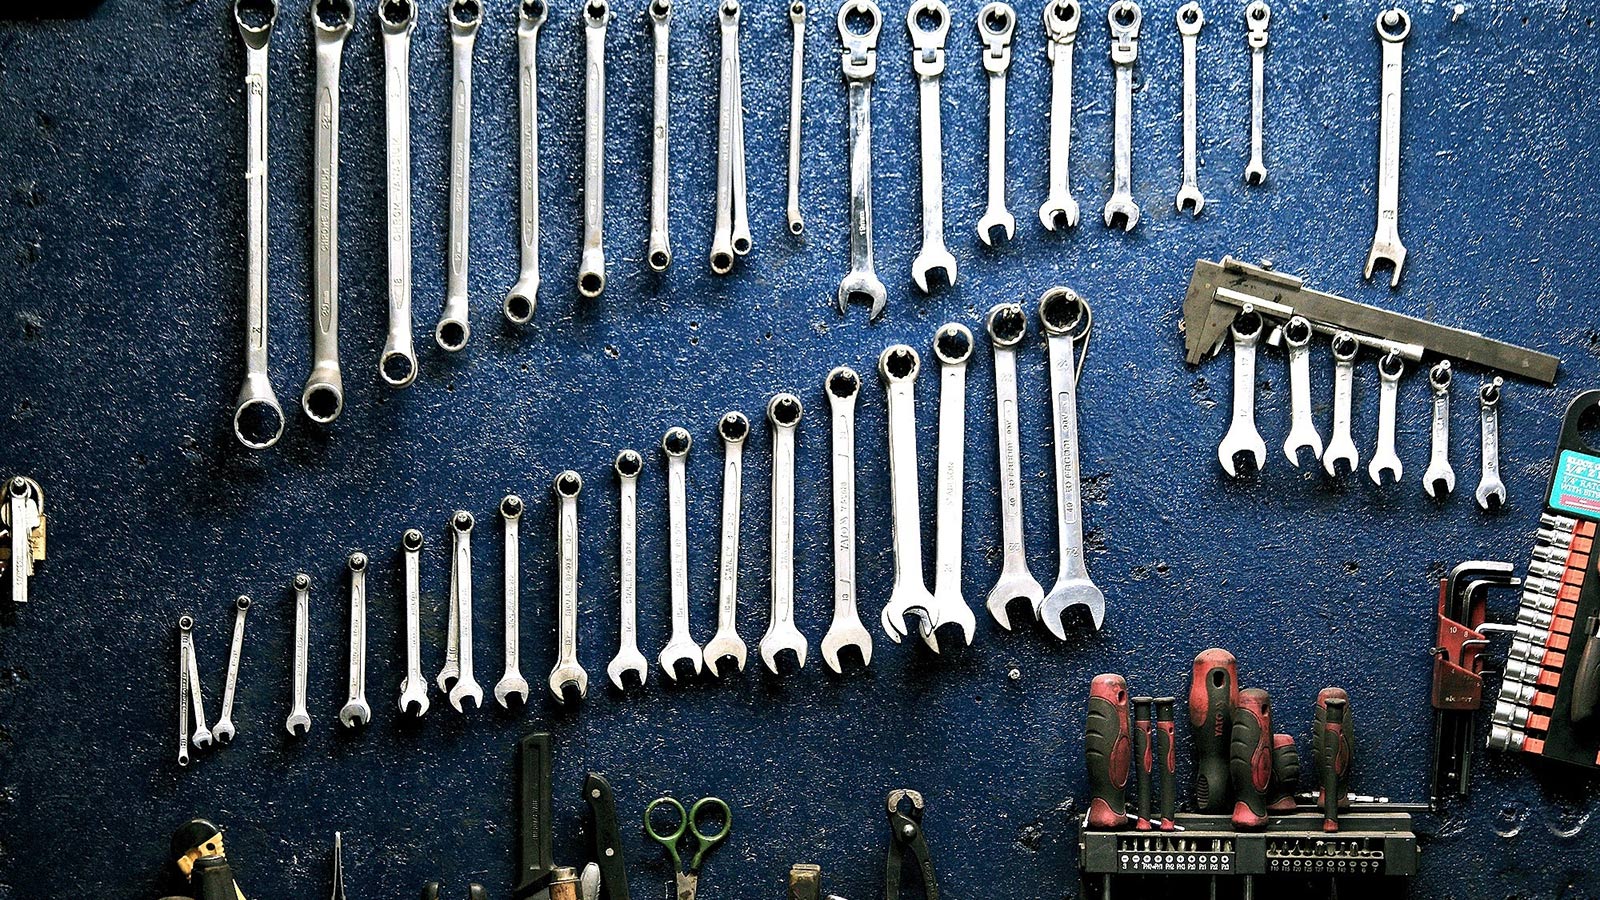 tools on a shelf